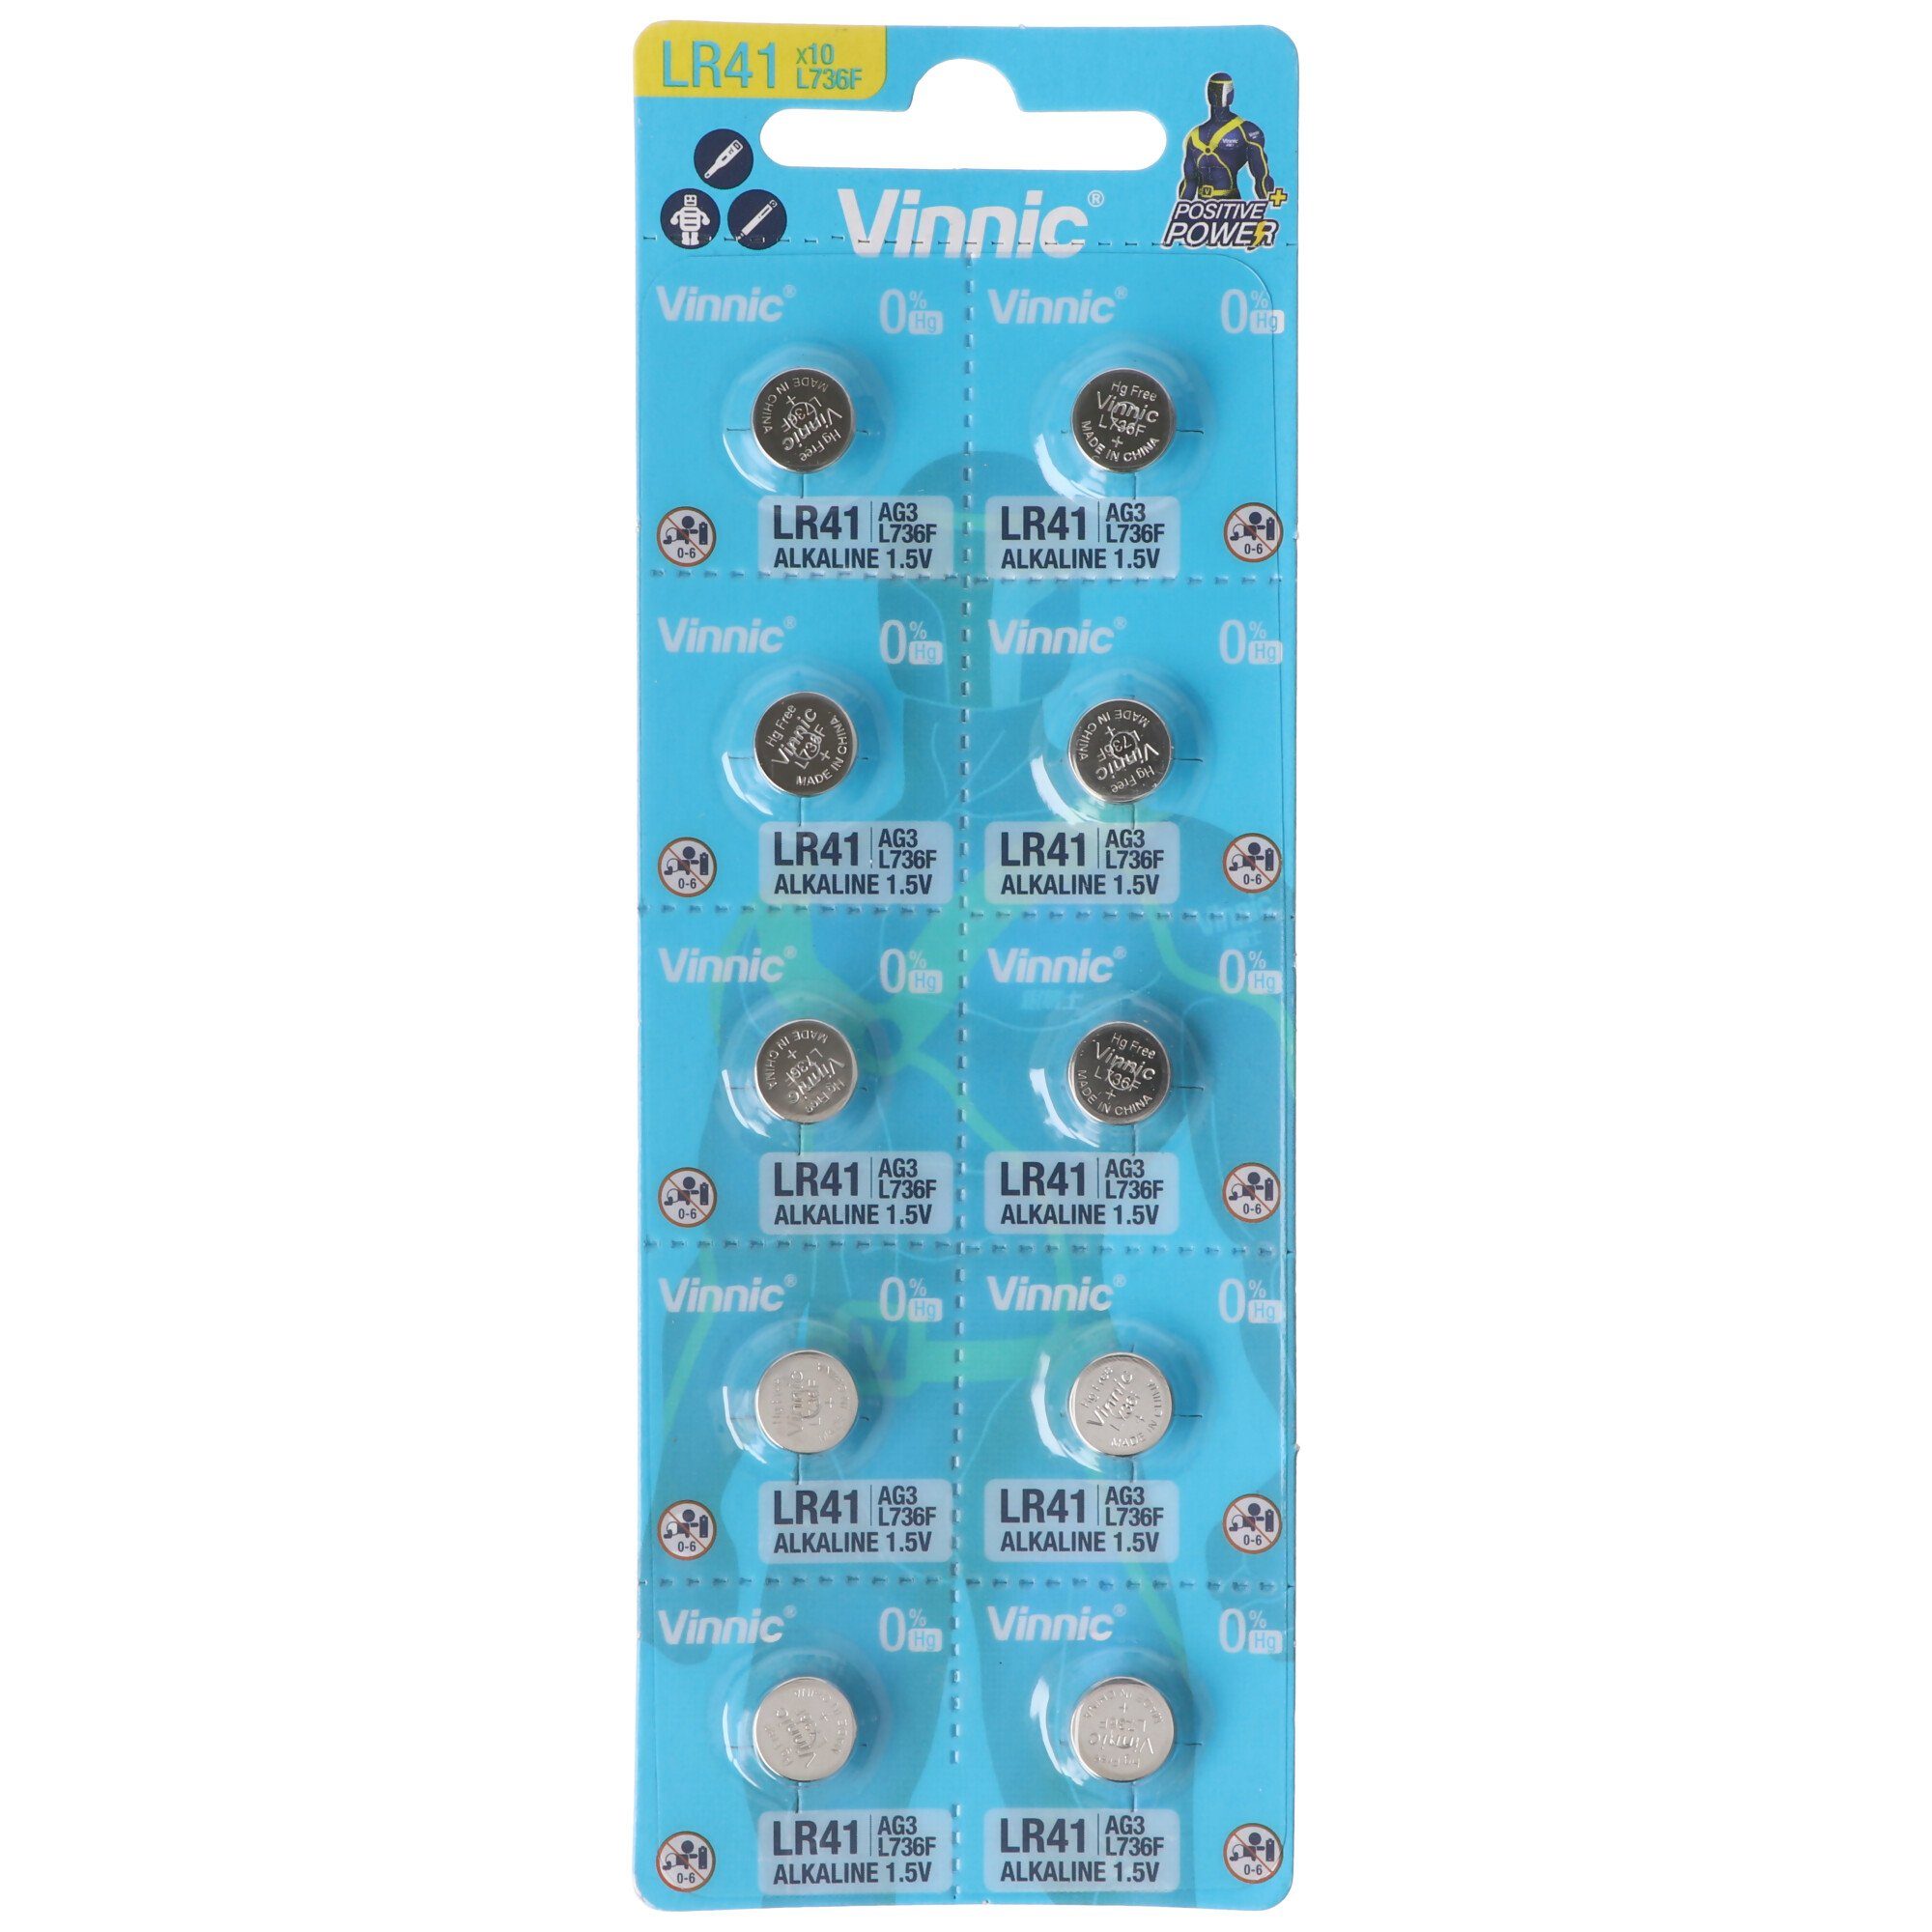 VINNIC 10 Stück Alkaline Batterie AG3, LR41 Alkaline Batterie L736F, AG3, L7 Knopfzelle